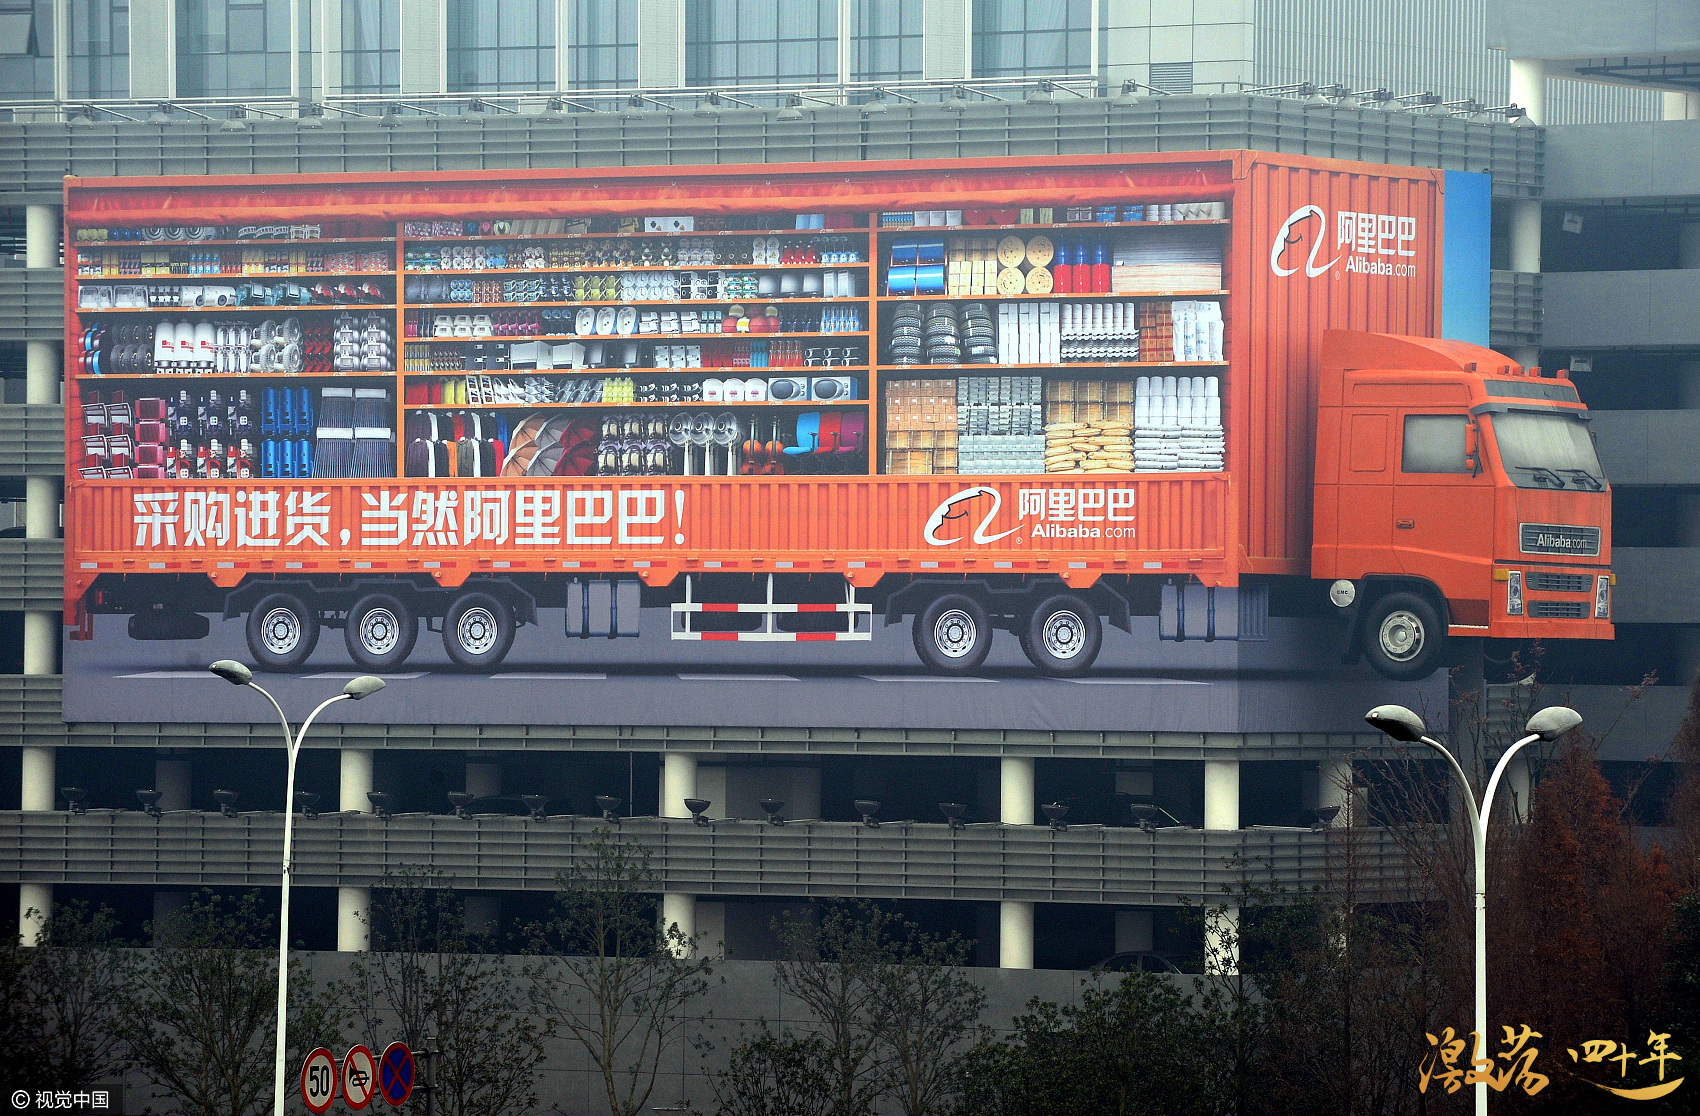 图为2009年12月8日,杭州滨江区阿里巴巴公司总部 图片来源:视觉中国